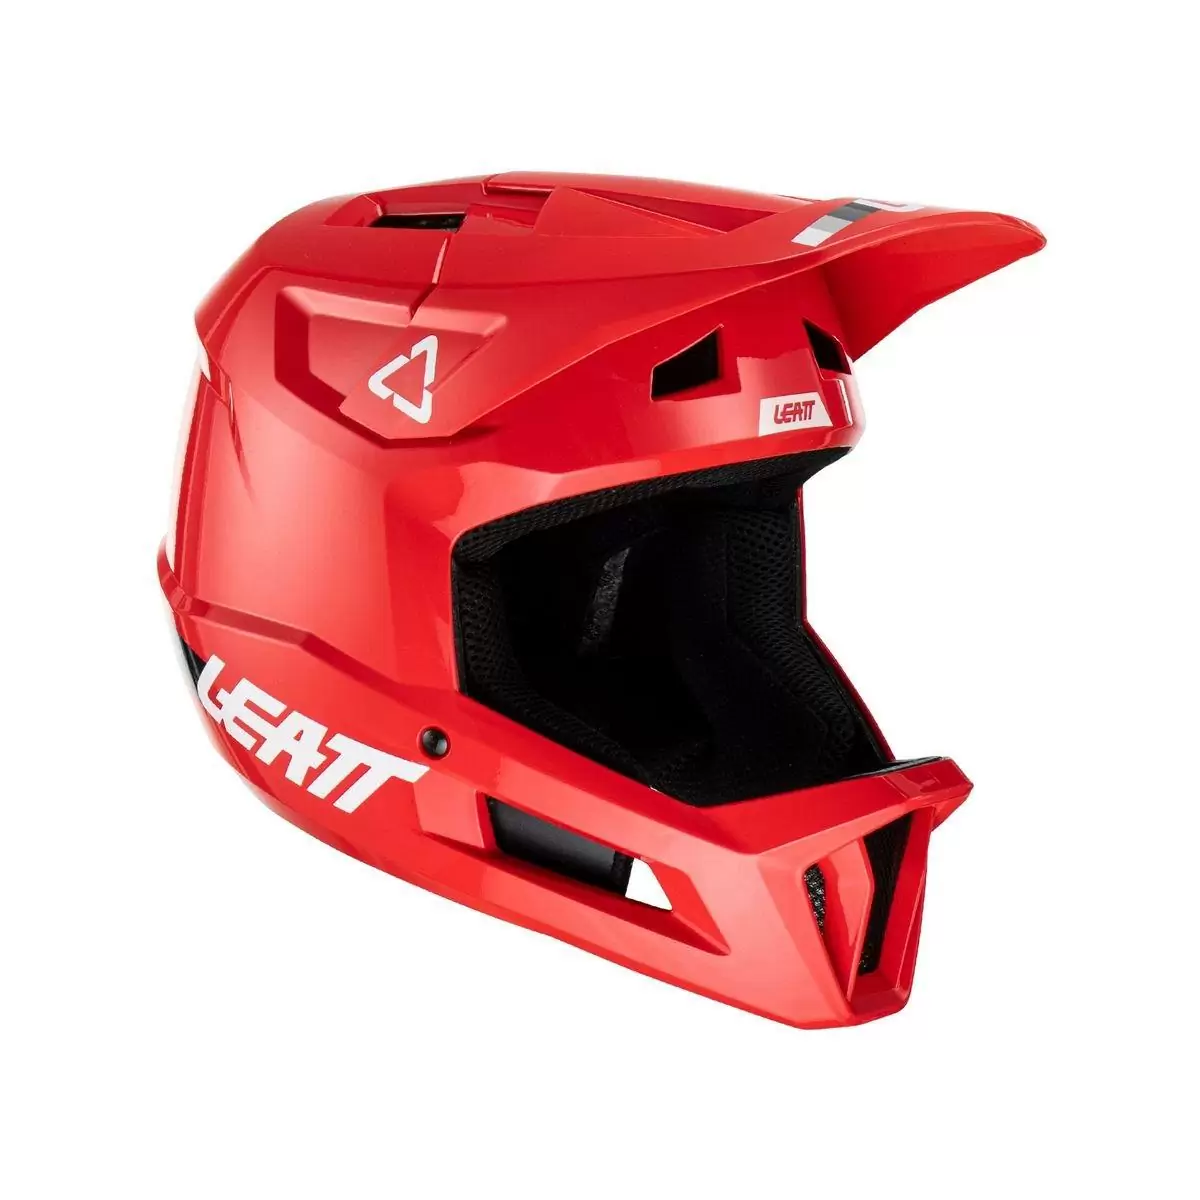 Gravity 1.0 MTB Fullface Helmet Red Size M (57-58cm) #3